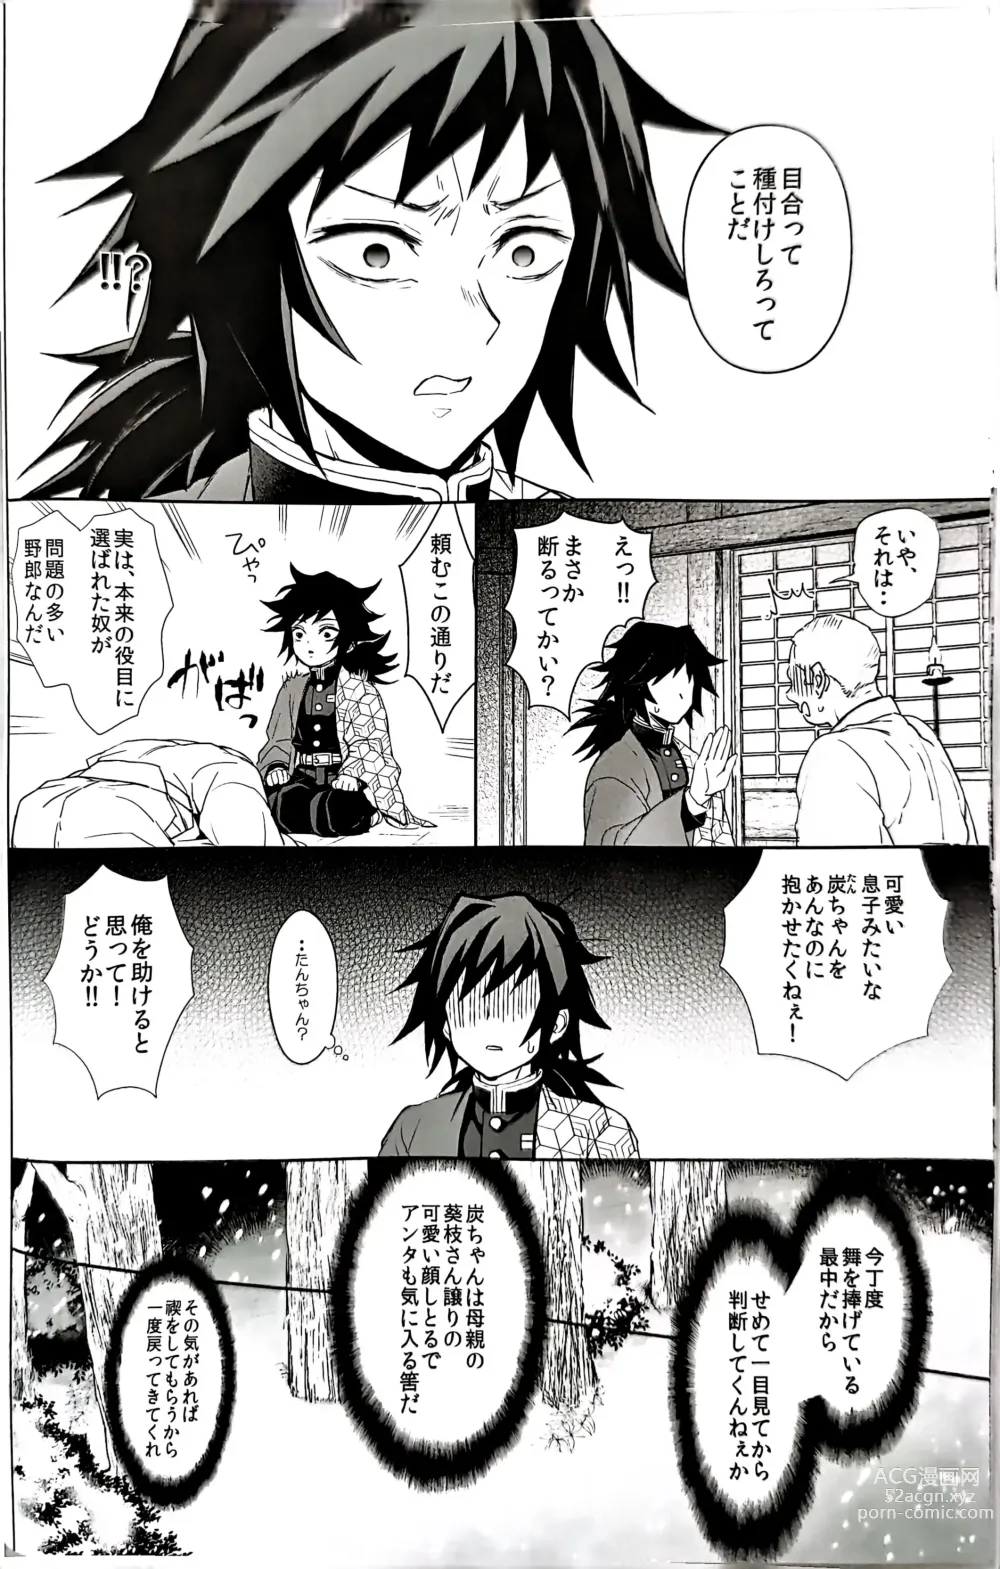 Page 9 of doujinshi Netsu o Haramu